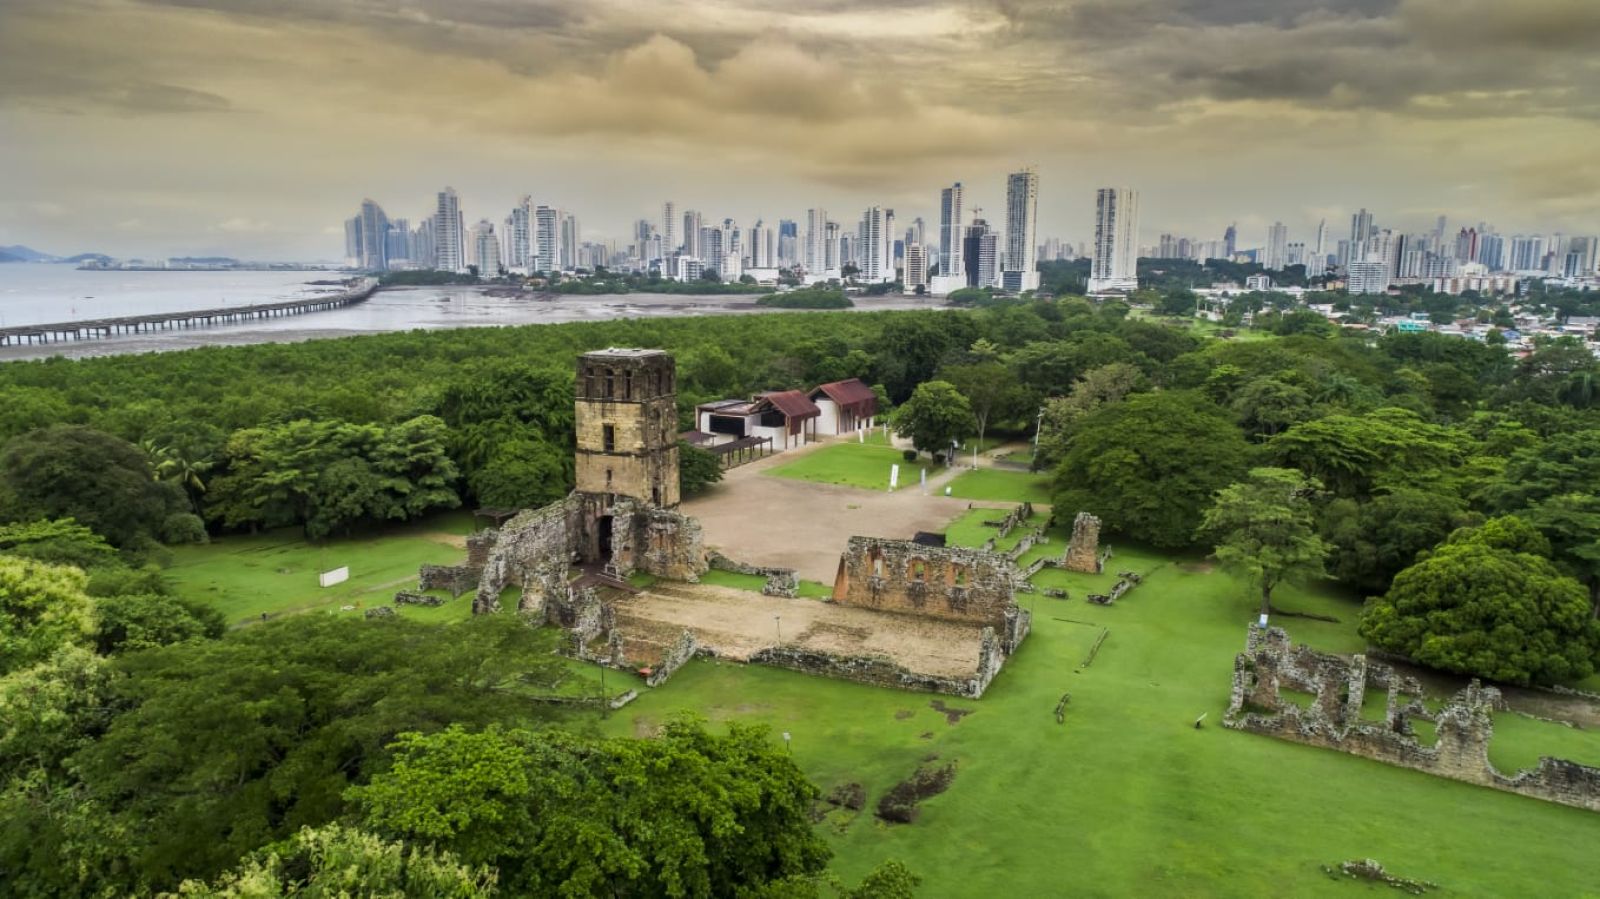 Felicidades en tus 503 años de fundación, mi querida Panamá.